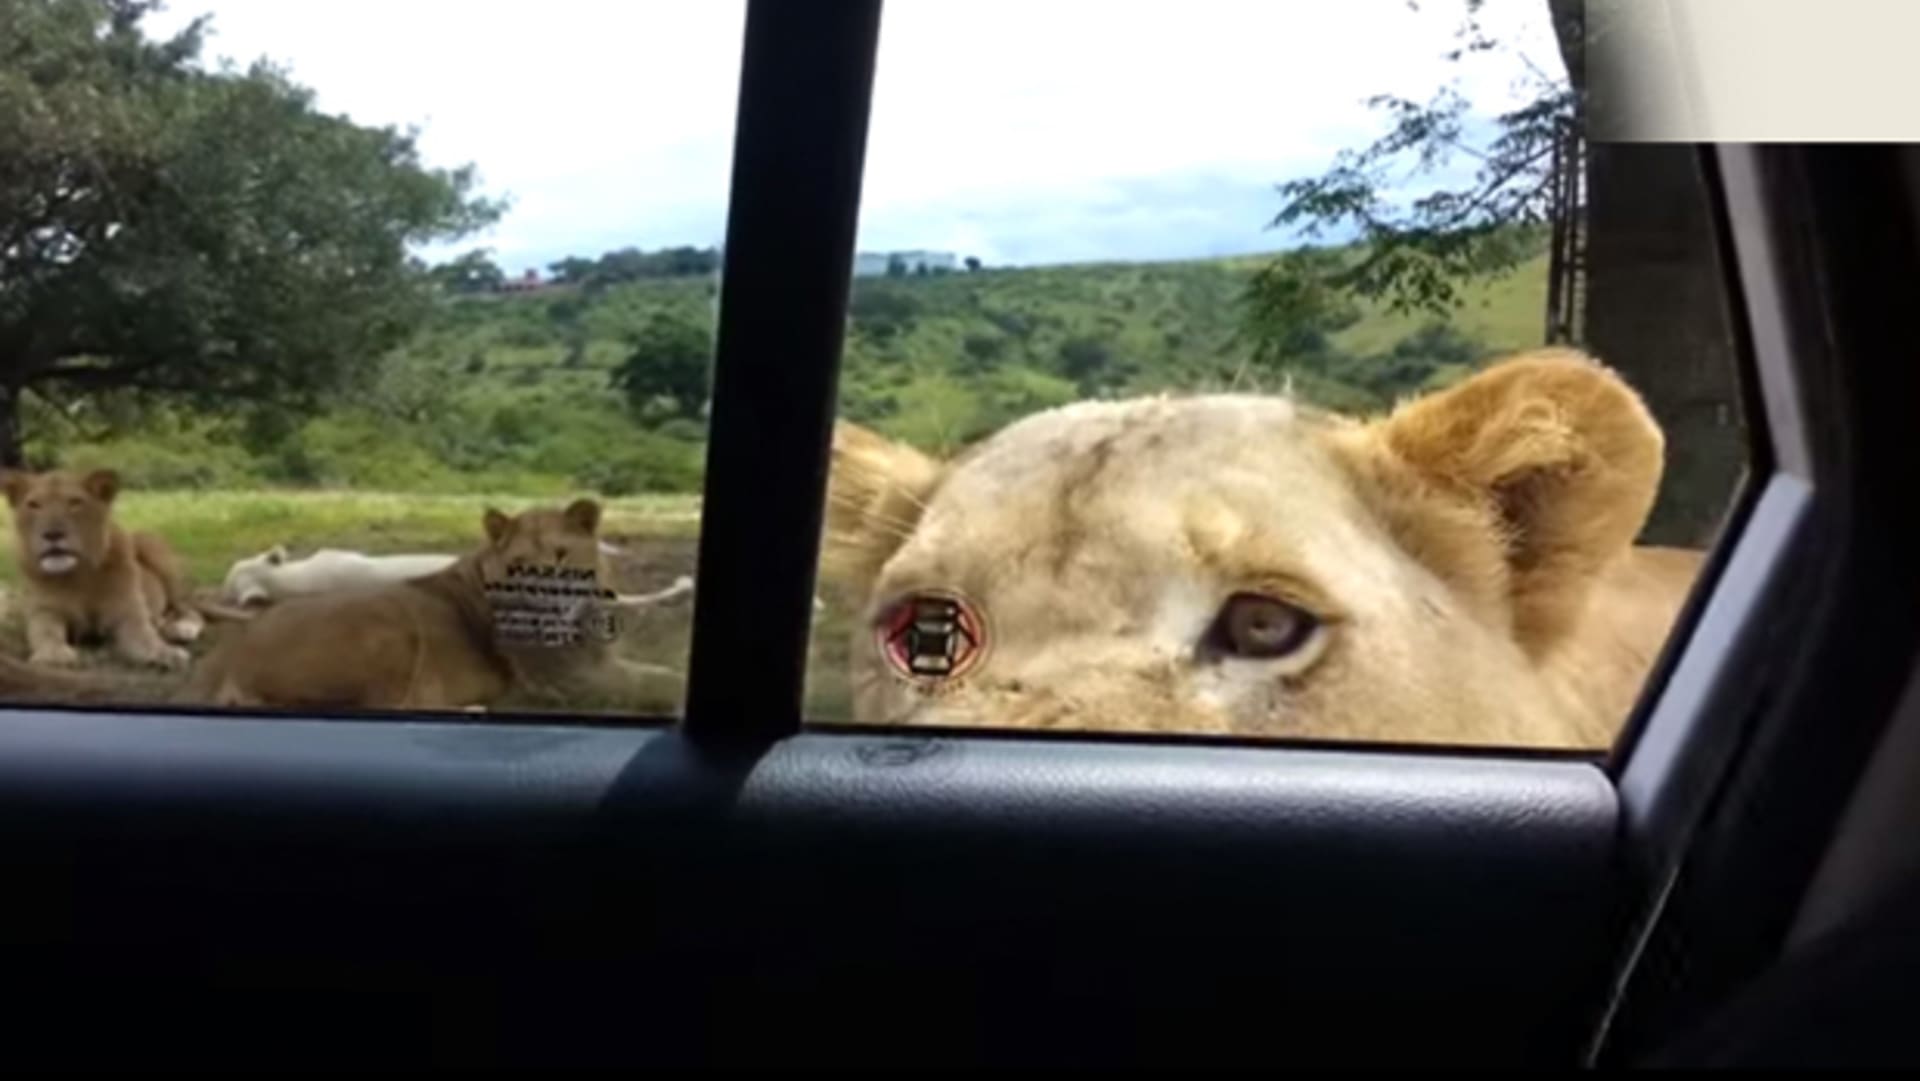 Děsivé! Lev dokázal otevřít dveře od auta, které bylo plné turistů!